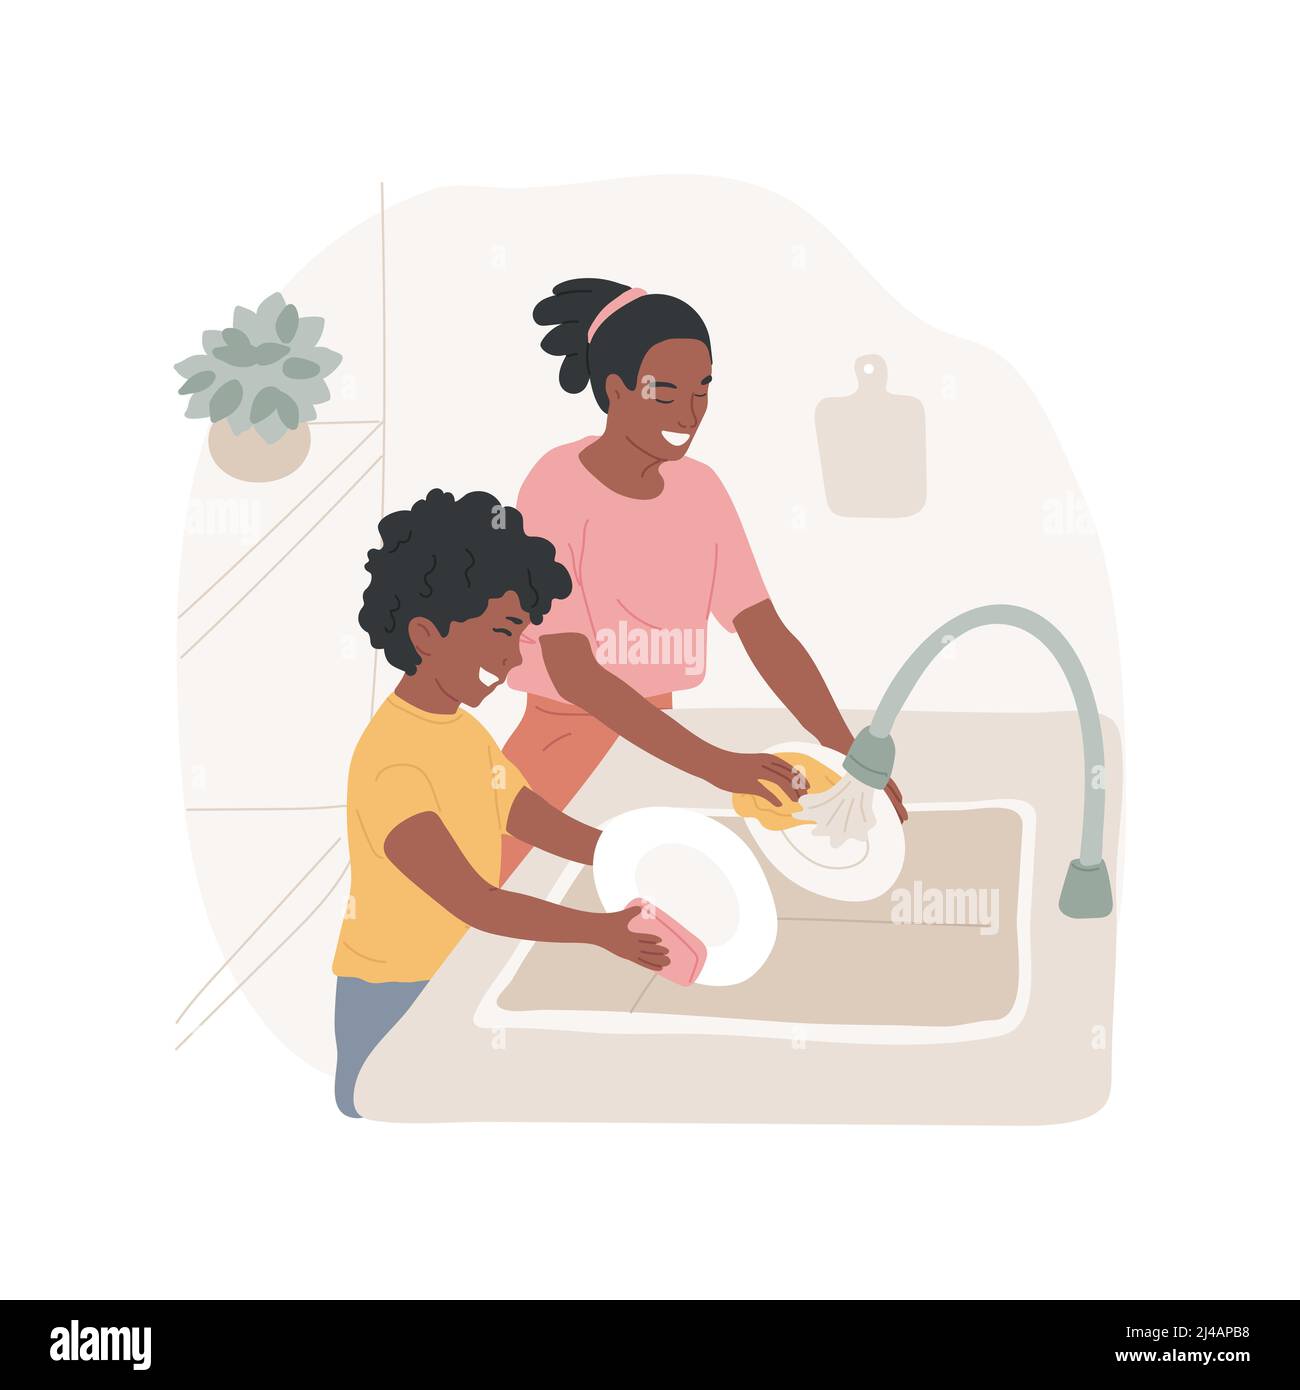 Ilustración de vectores de dibujos animados aislados para lavar platos.  Niño y mamá lavando platos juntos, niño ayuda en la cocina, estilo de vida,  familia haciendo las tareas domésticas juntos, rutina diaria